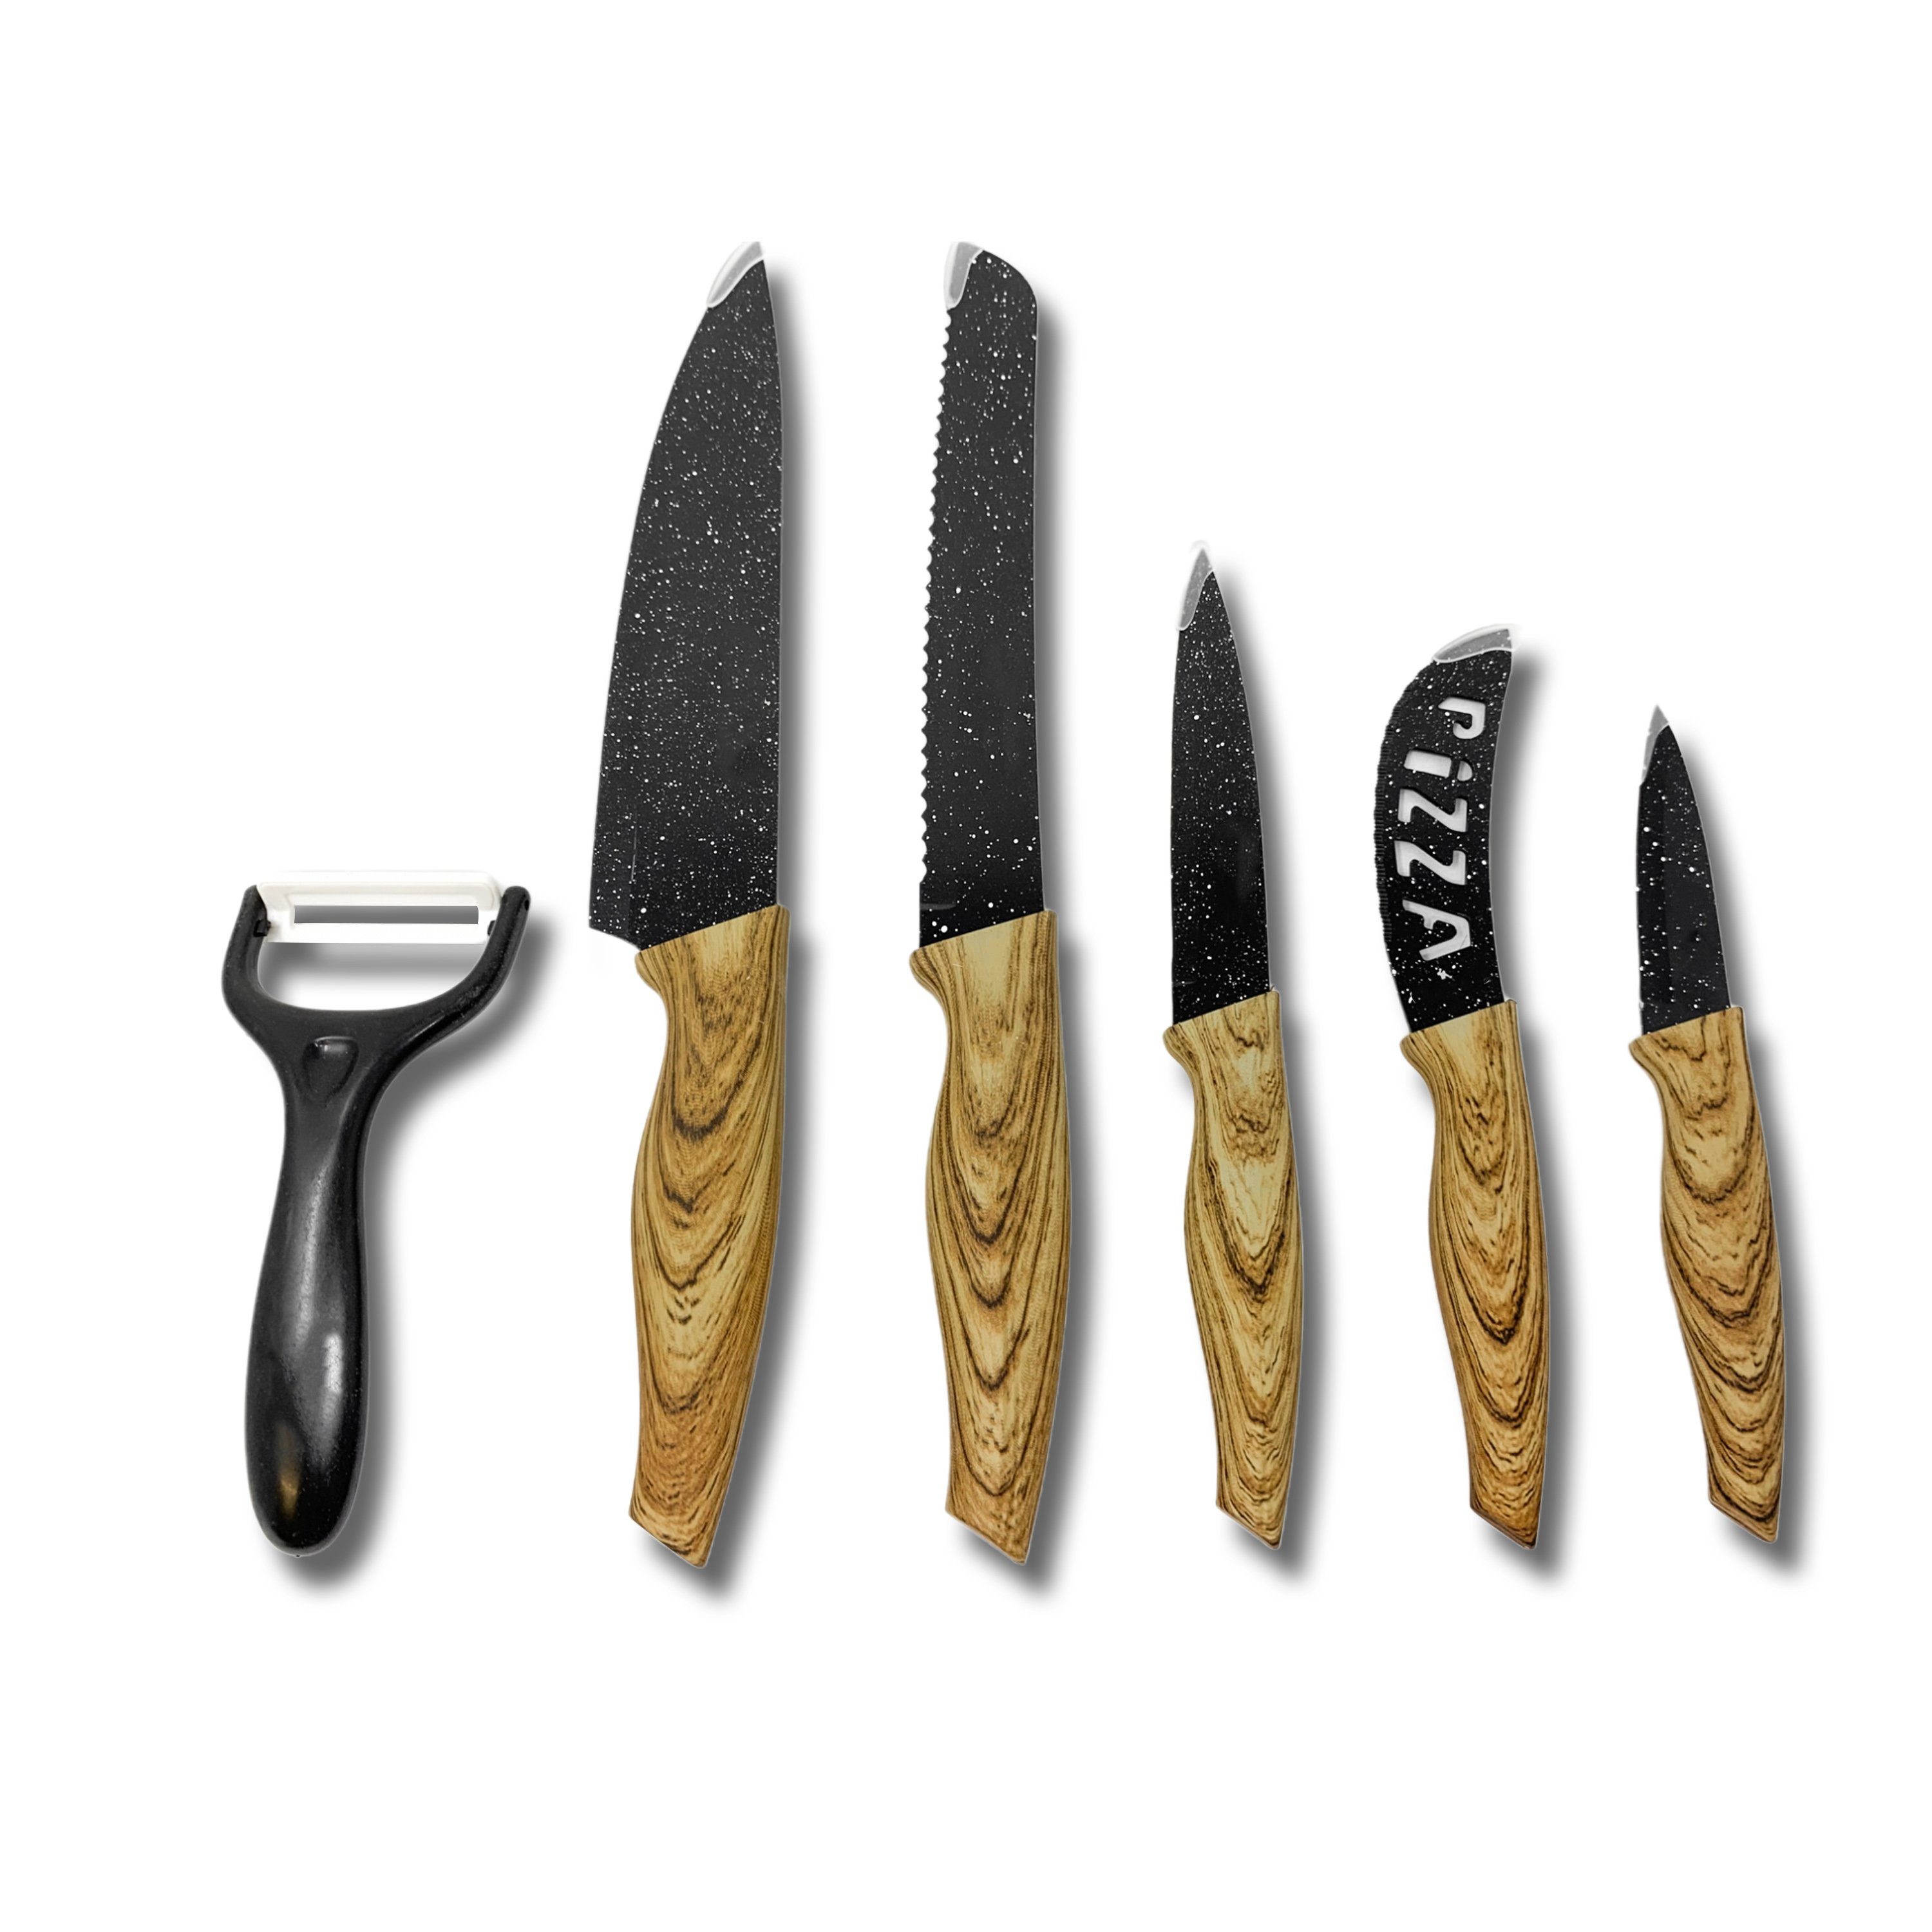 H-basics Messer-Set 6 teiliges Messerset - Kochmesser, Universalmesser,  Brotmesser, Pizzamesser, Schälmesser, Antihaft Beschichtung, Marmor  beschichtet